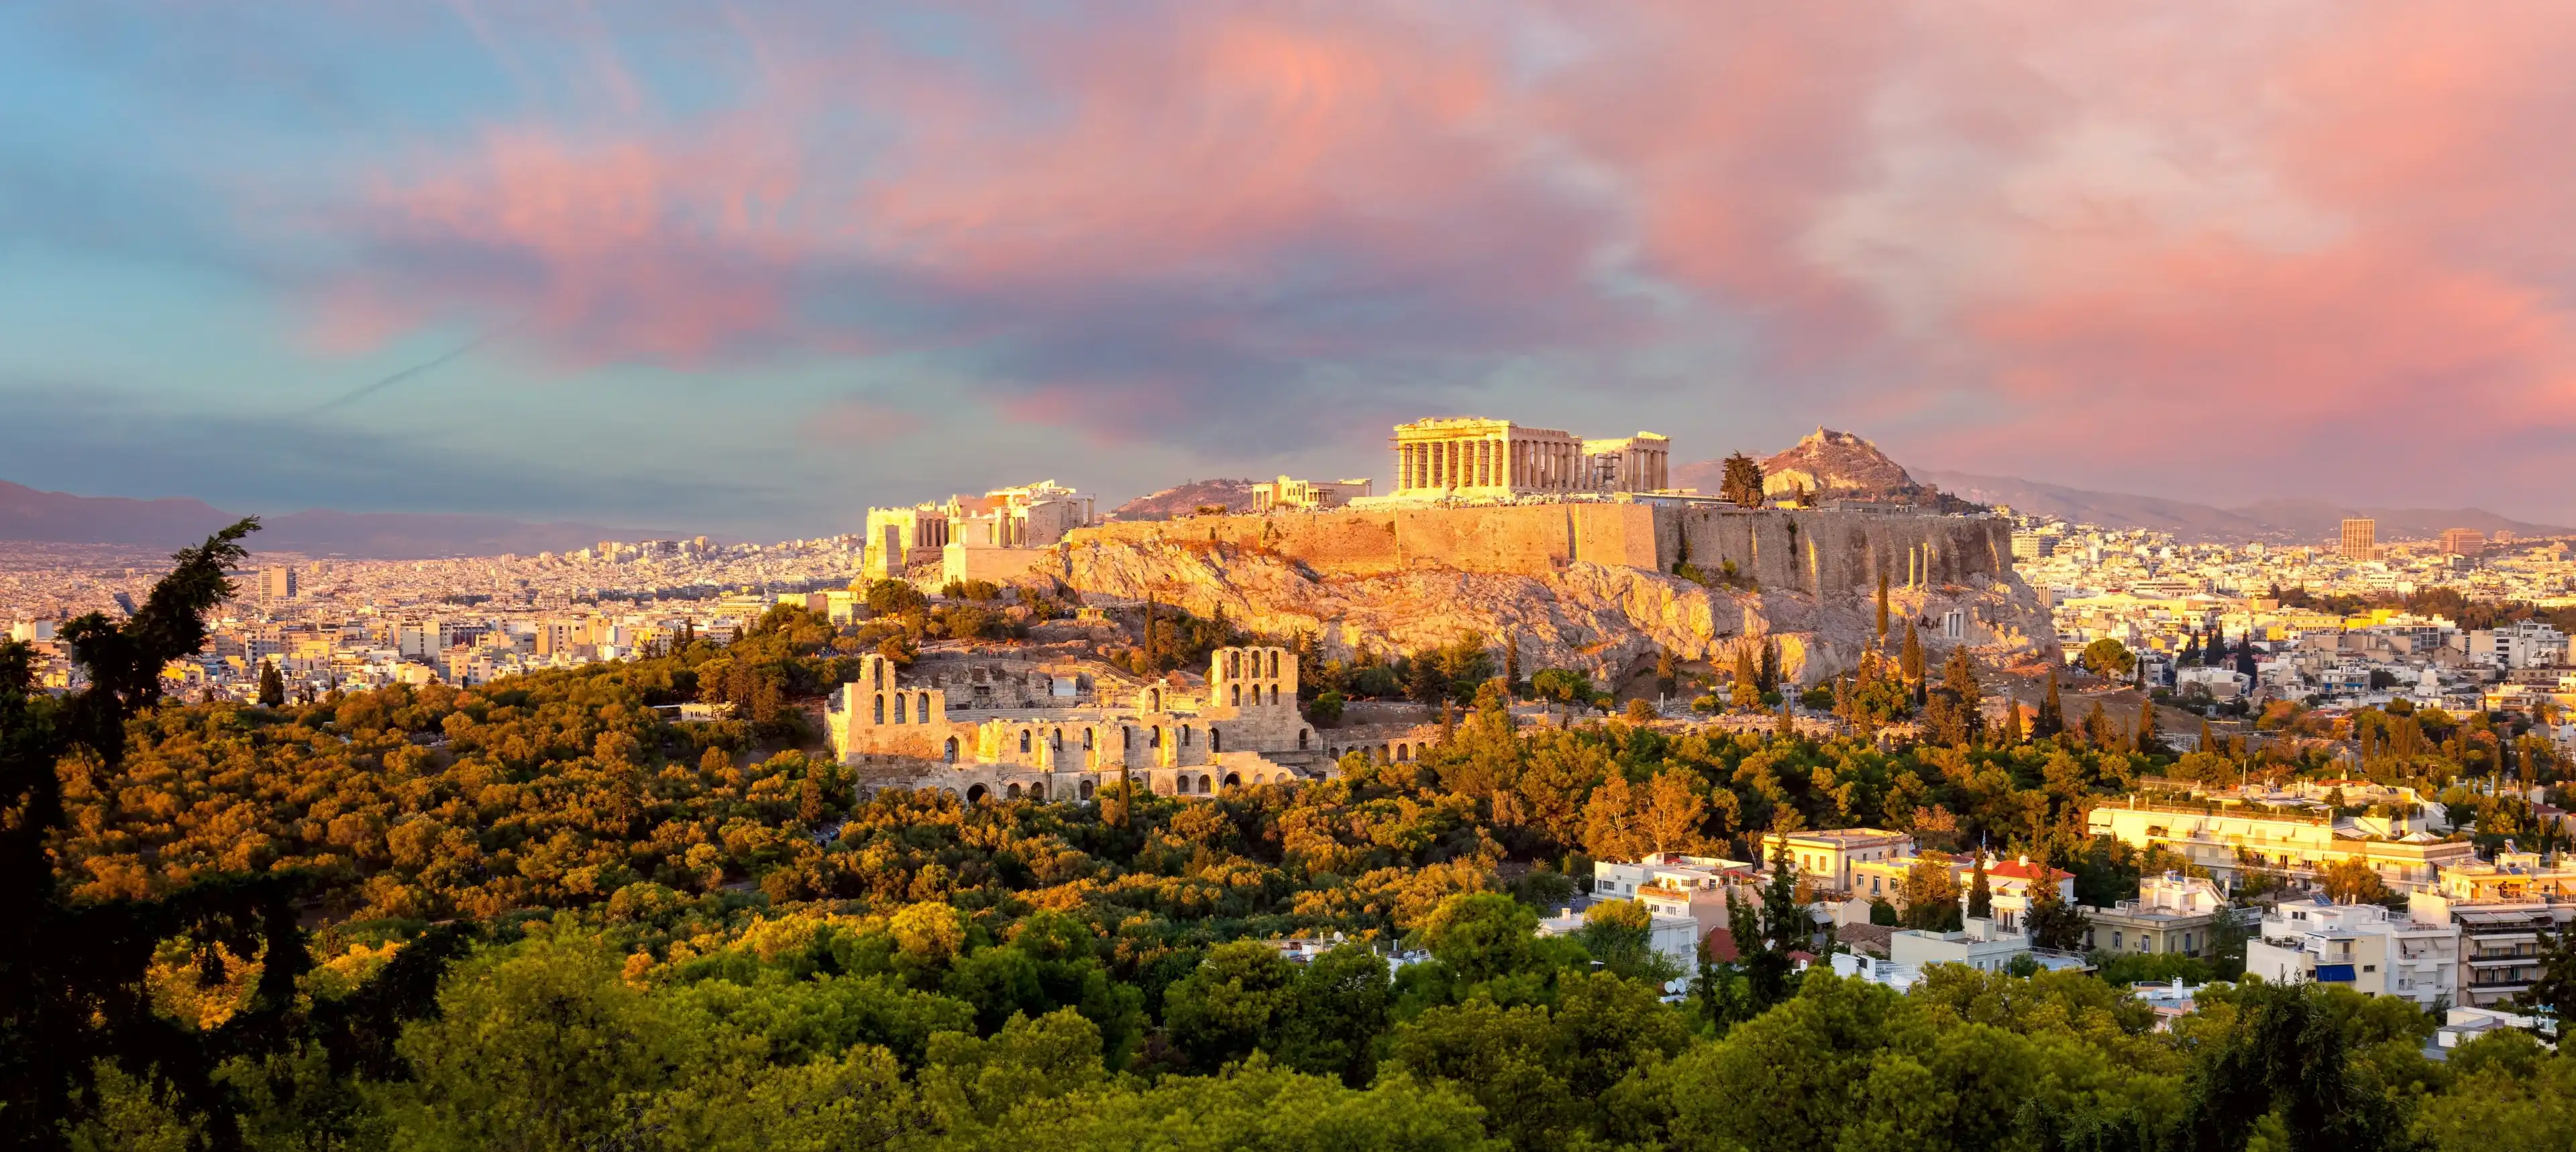 Greece hotels. Best hotels in Greece